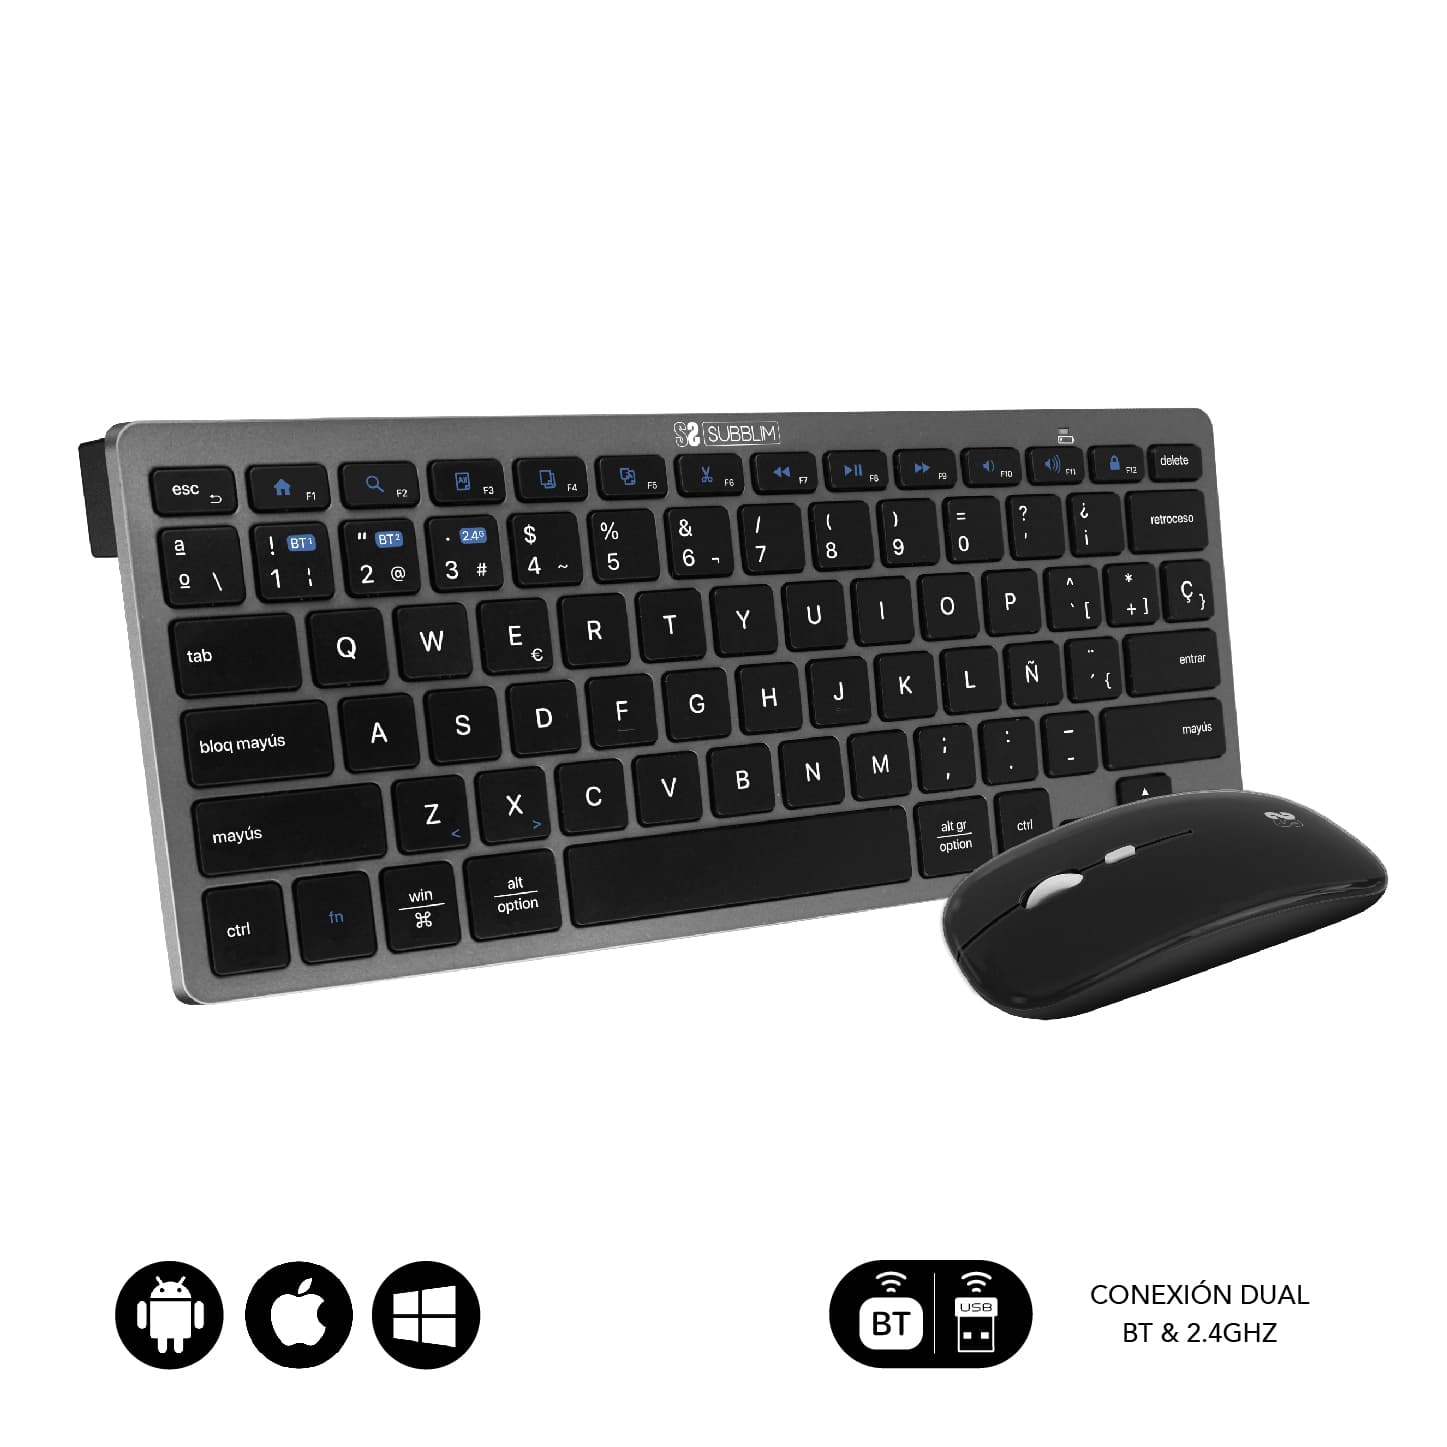 Combo multidispositivo compacto teclado y ratón en color gris y negro diseño elegante y ergonómico.